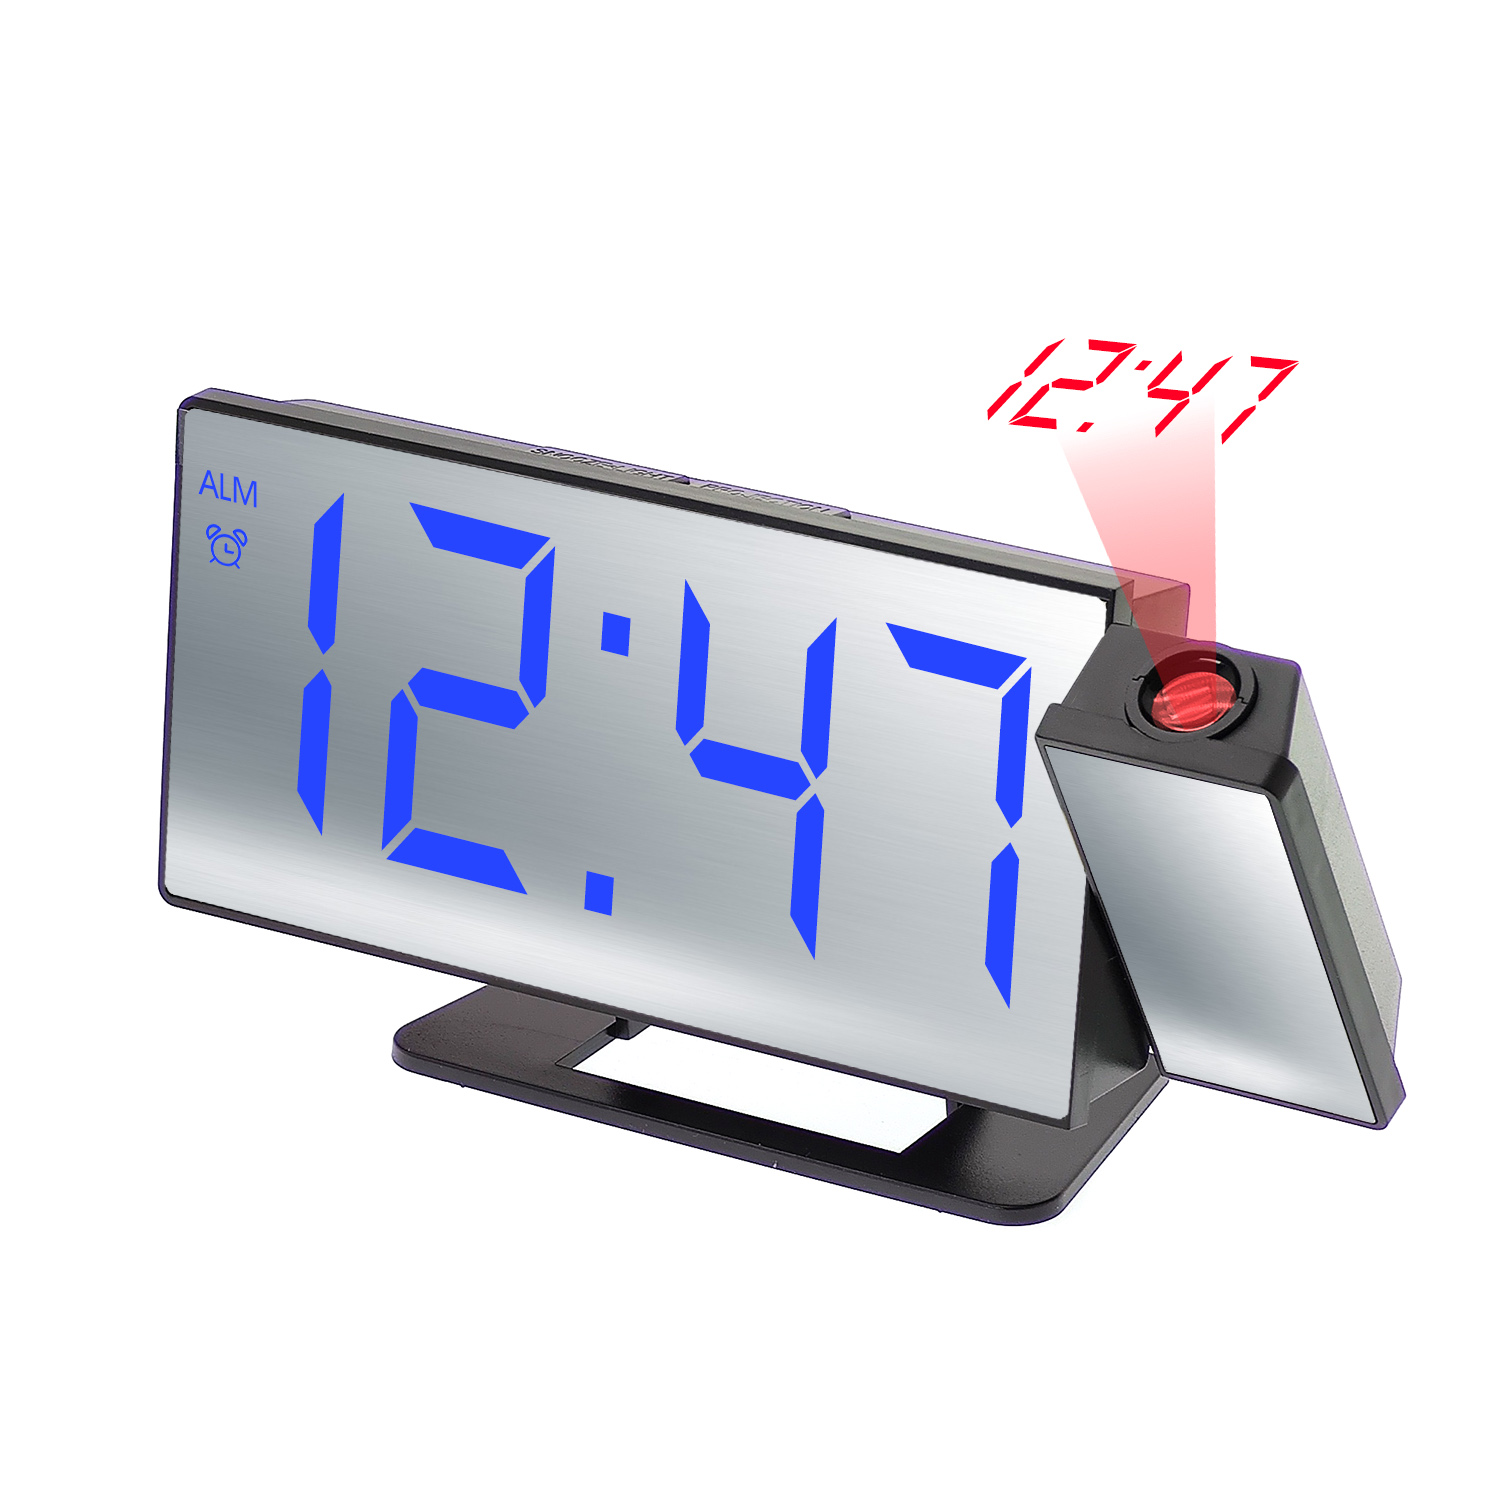 часы настольные VST-896-5 Синие, проекционные (без блока, питание от USB)